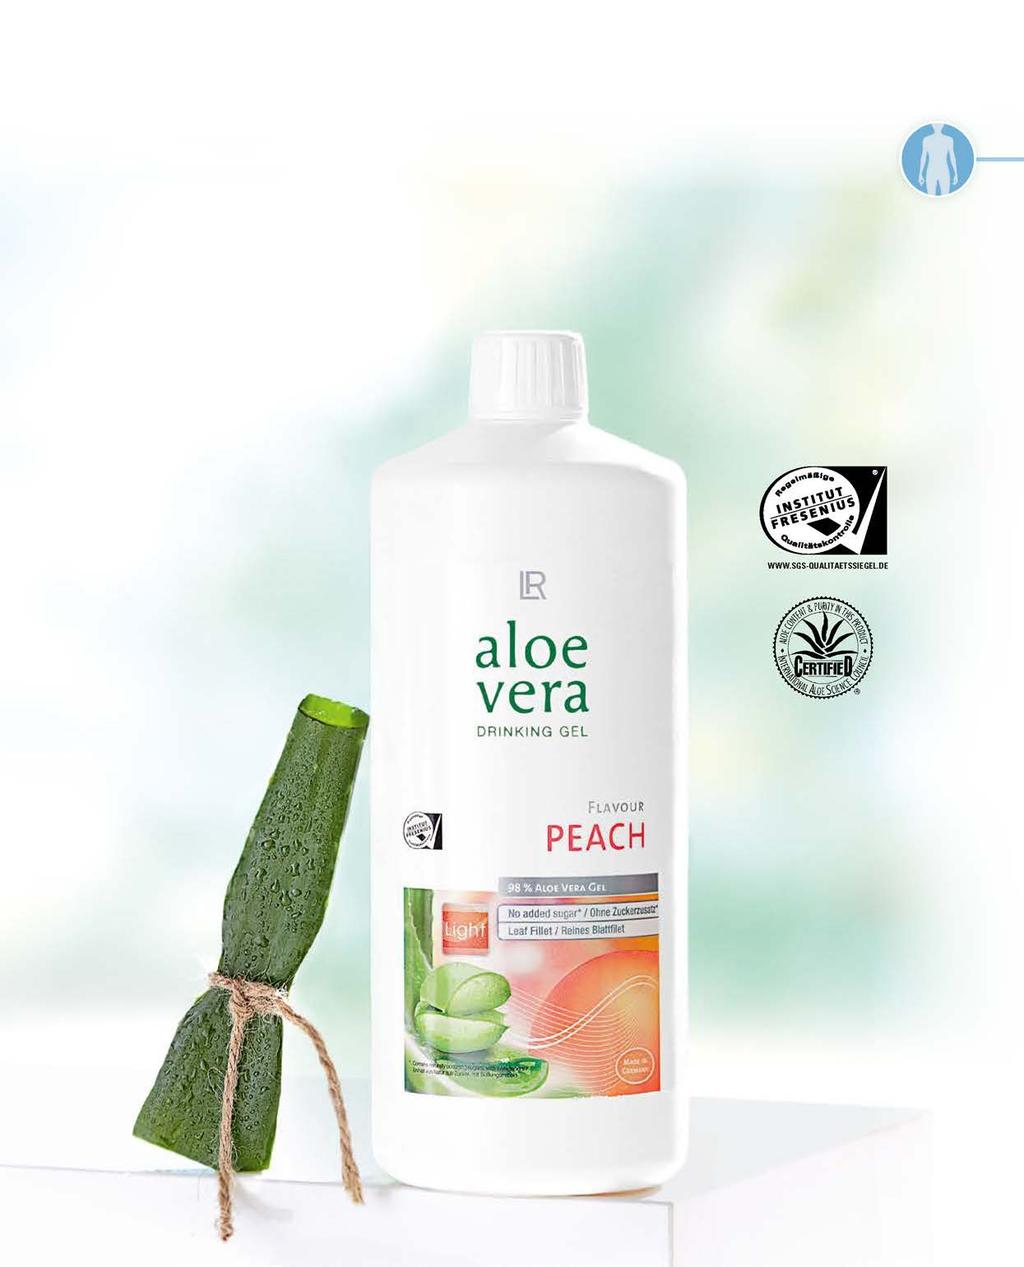 Ελαφρύ και υγιεινό χωρίς προσθήκη ζάχαρης 1 Ελαφριά φρουτώδης γεύση χωρίς προσθήκη ζάχαρης με 98% καθαρό φιλέτο του φύλλου Aloe Vera.